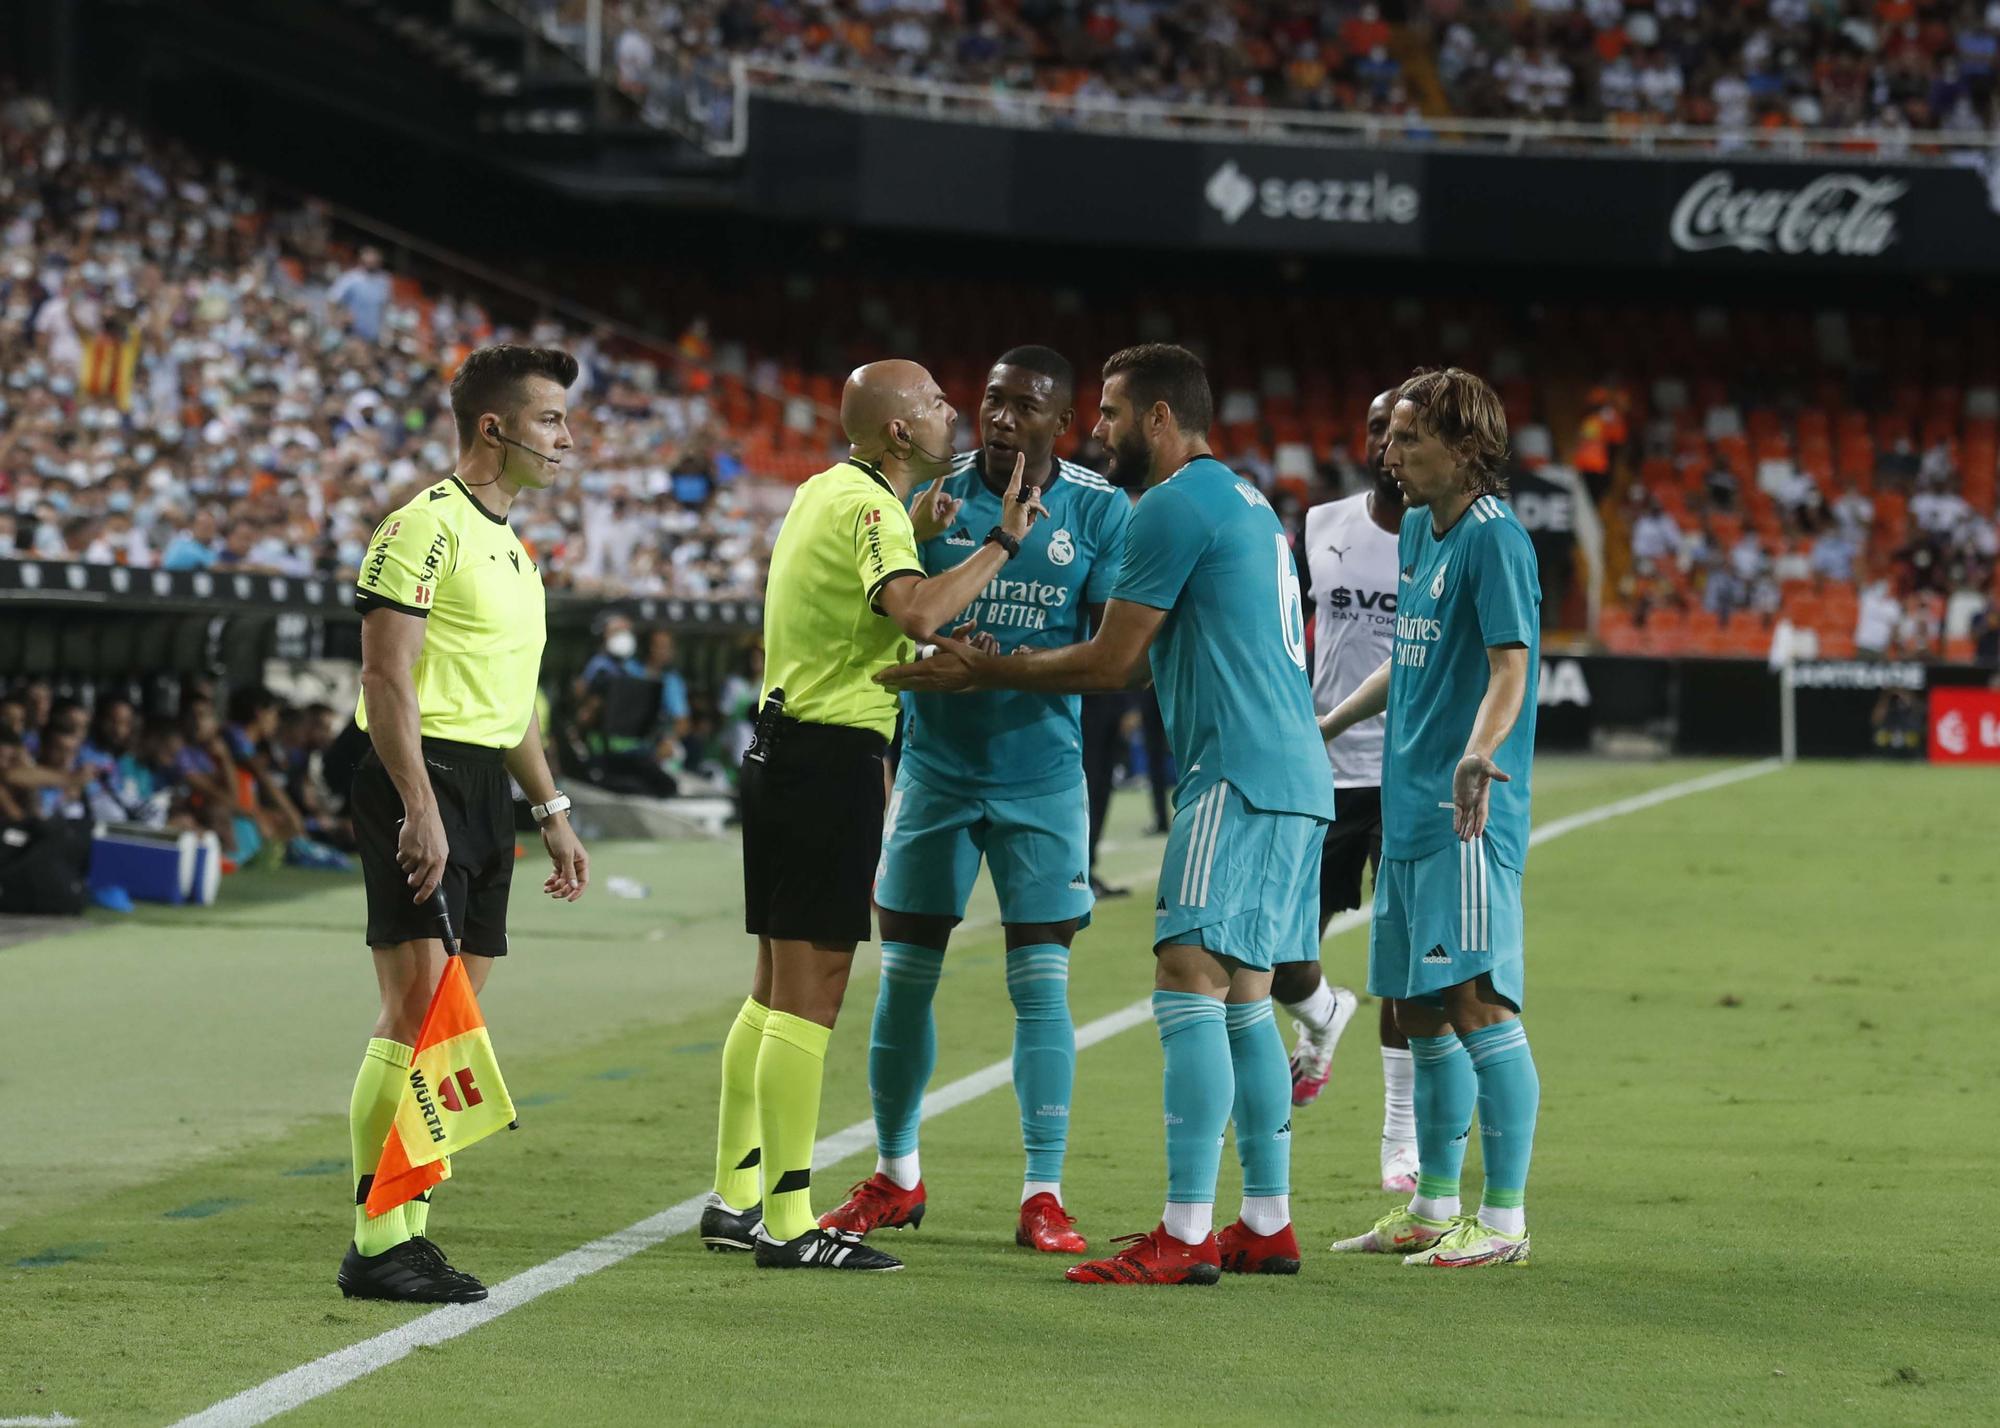 Valencia - Real Madrid: las mejores fotos del partido